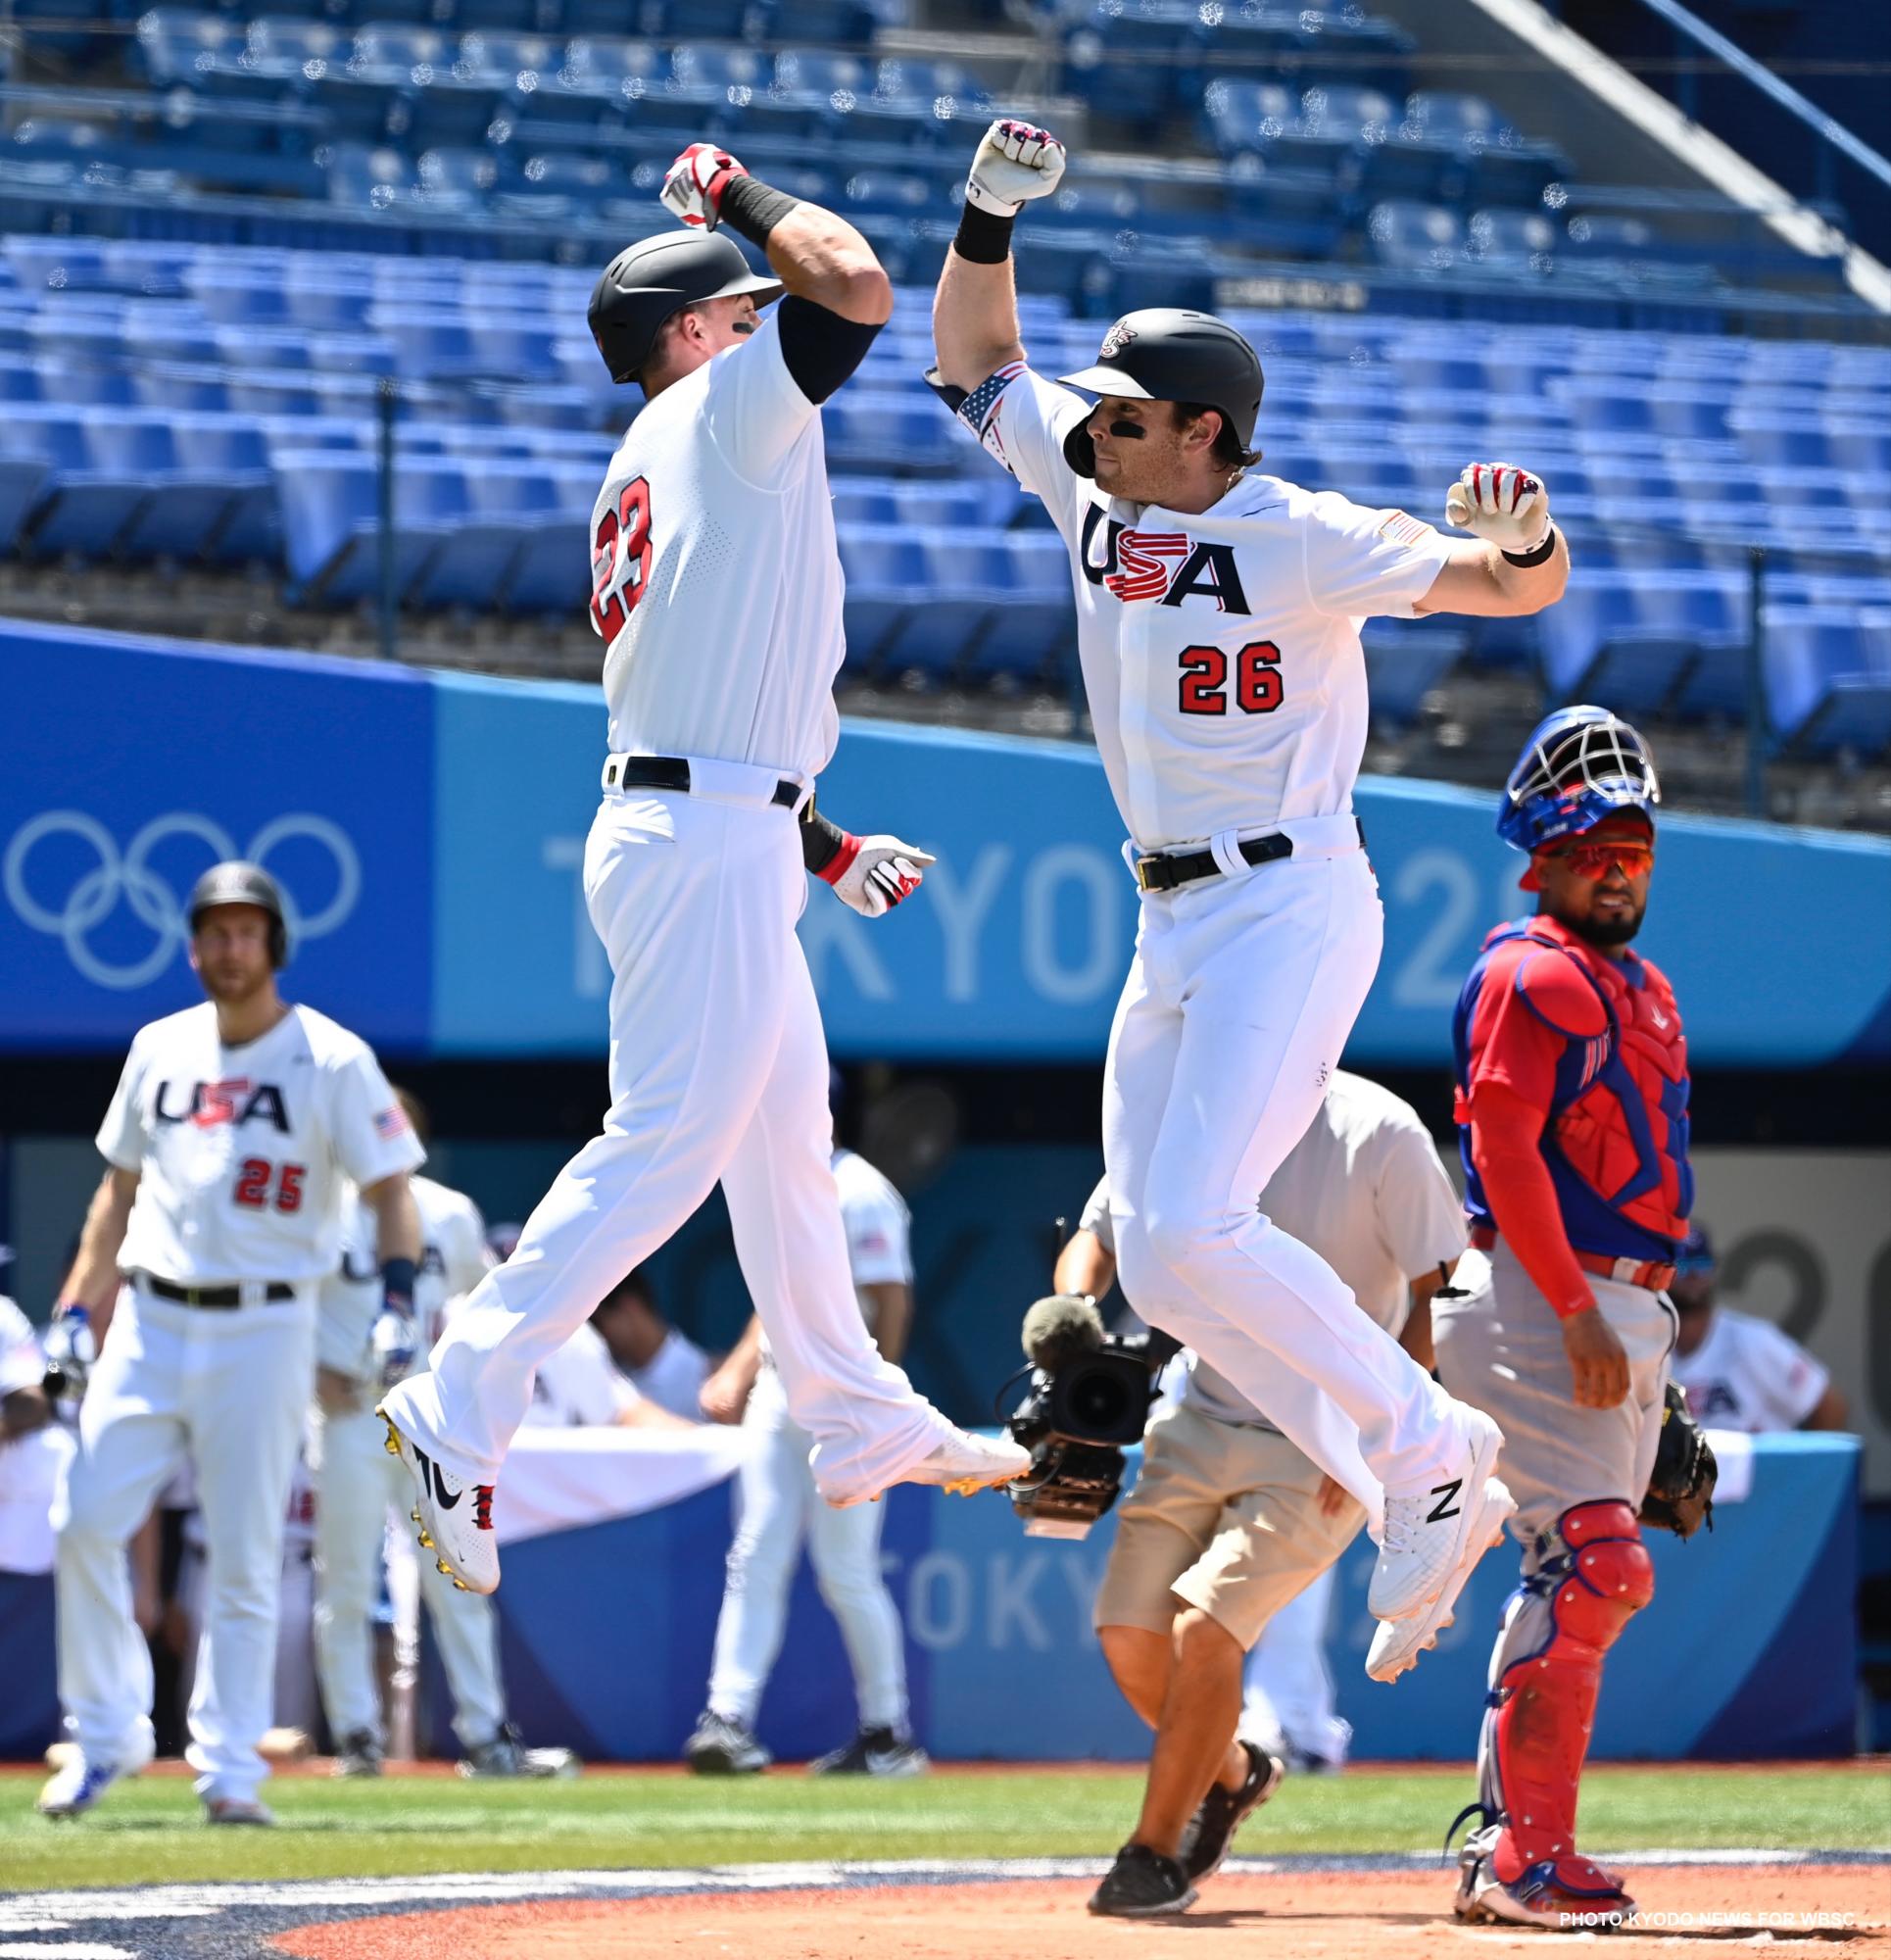 $!Dominicana queda fuera de la lucha por el oro olímpico en beisbol; Japón avanza a la final